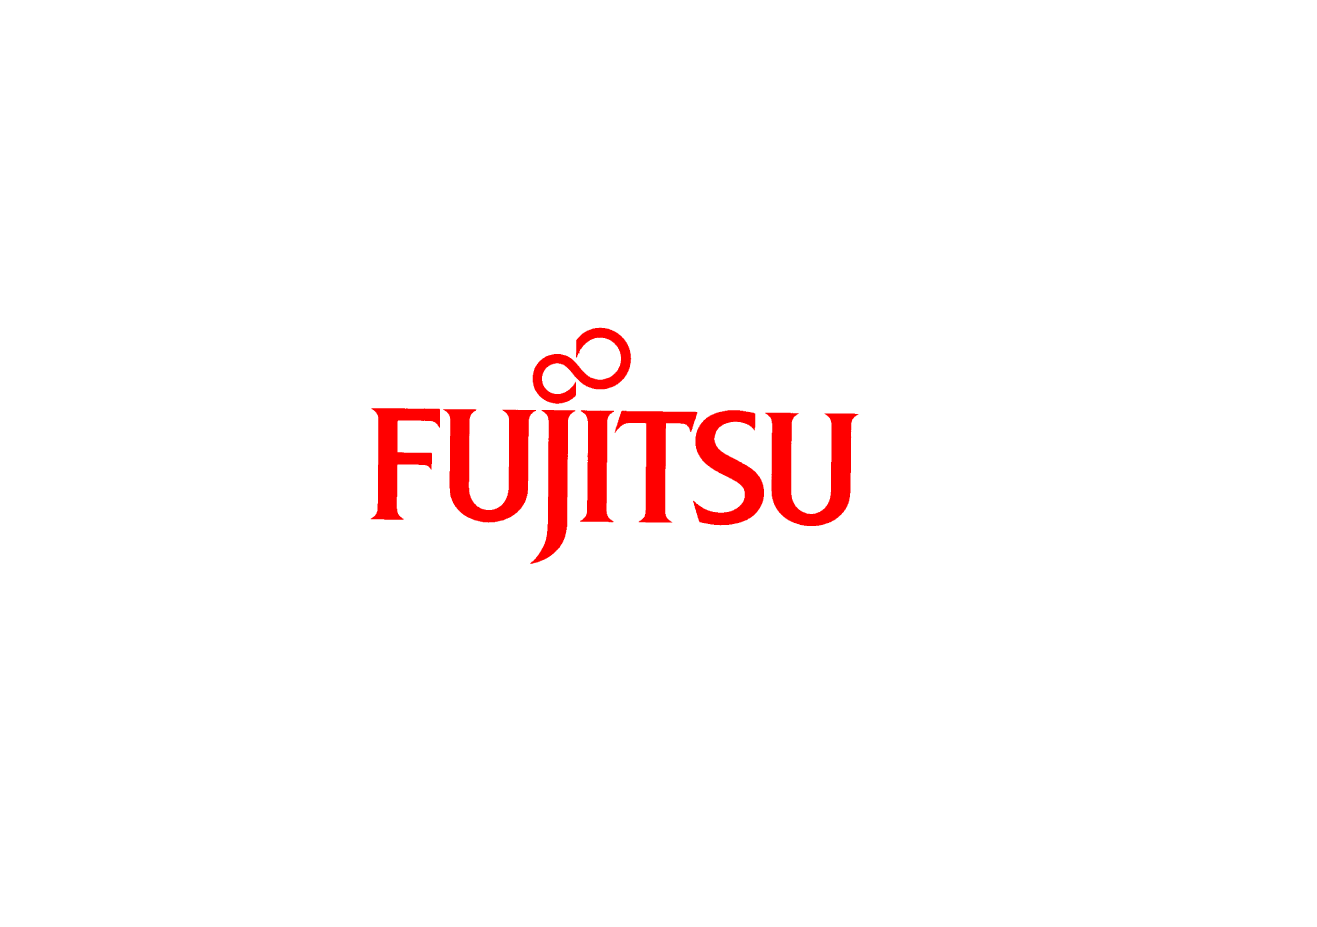 Fujitsu suffered a malware attack and probably a data breach